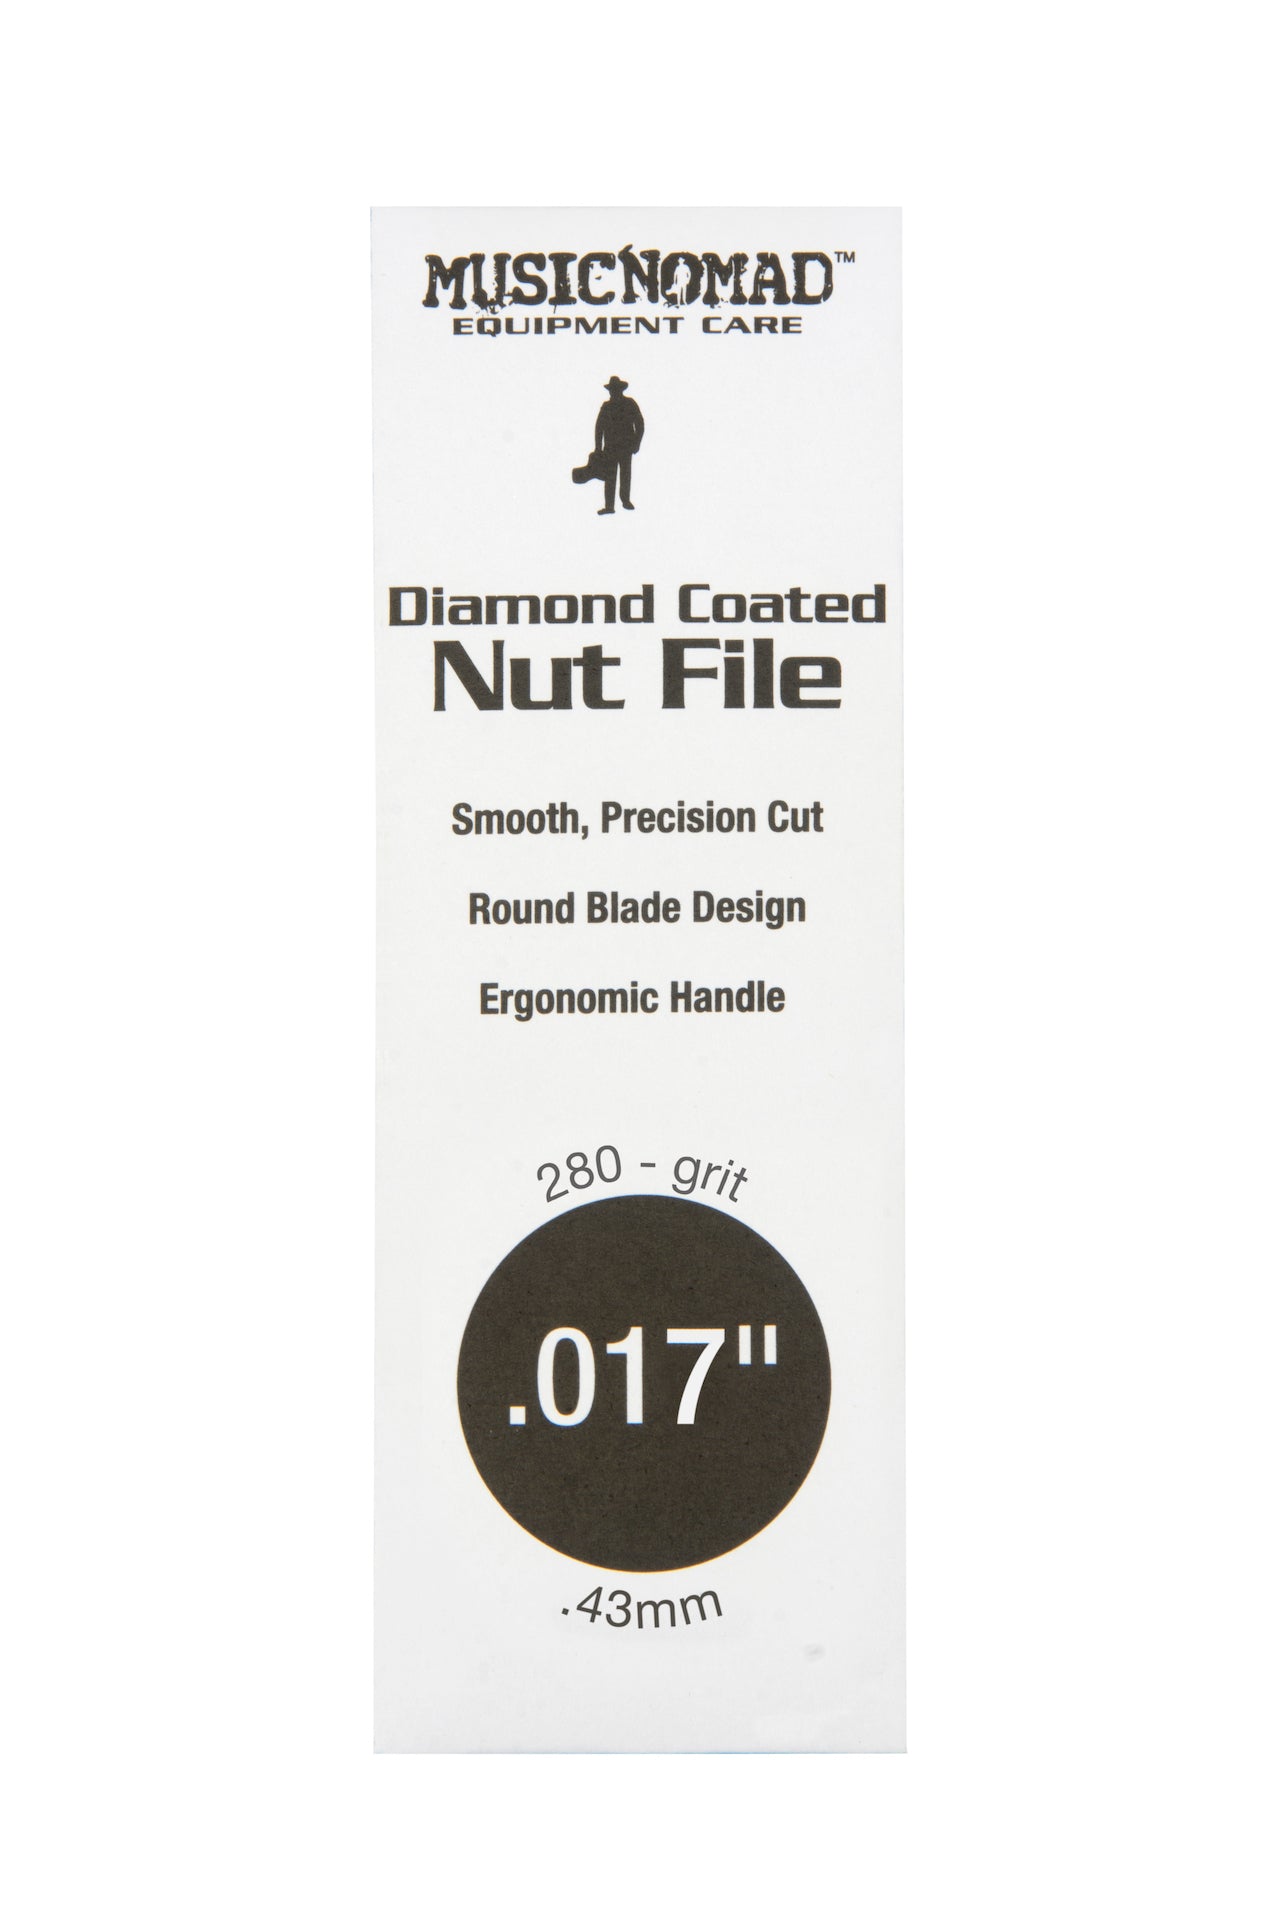 Music Nomad Diamond Coated Nut File Singles - HIENDGUITAR .017" .017" musicnomad musicnomad